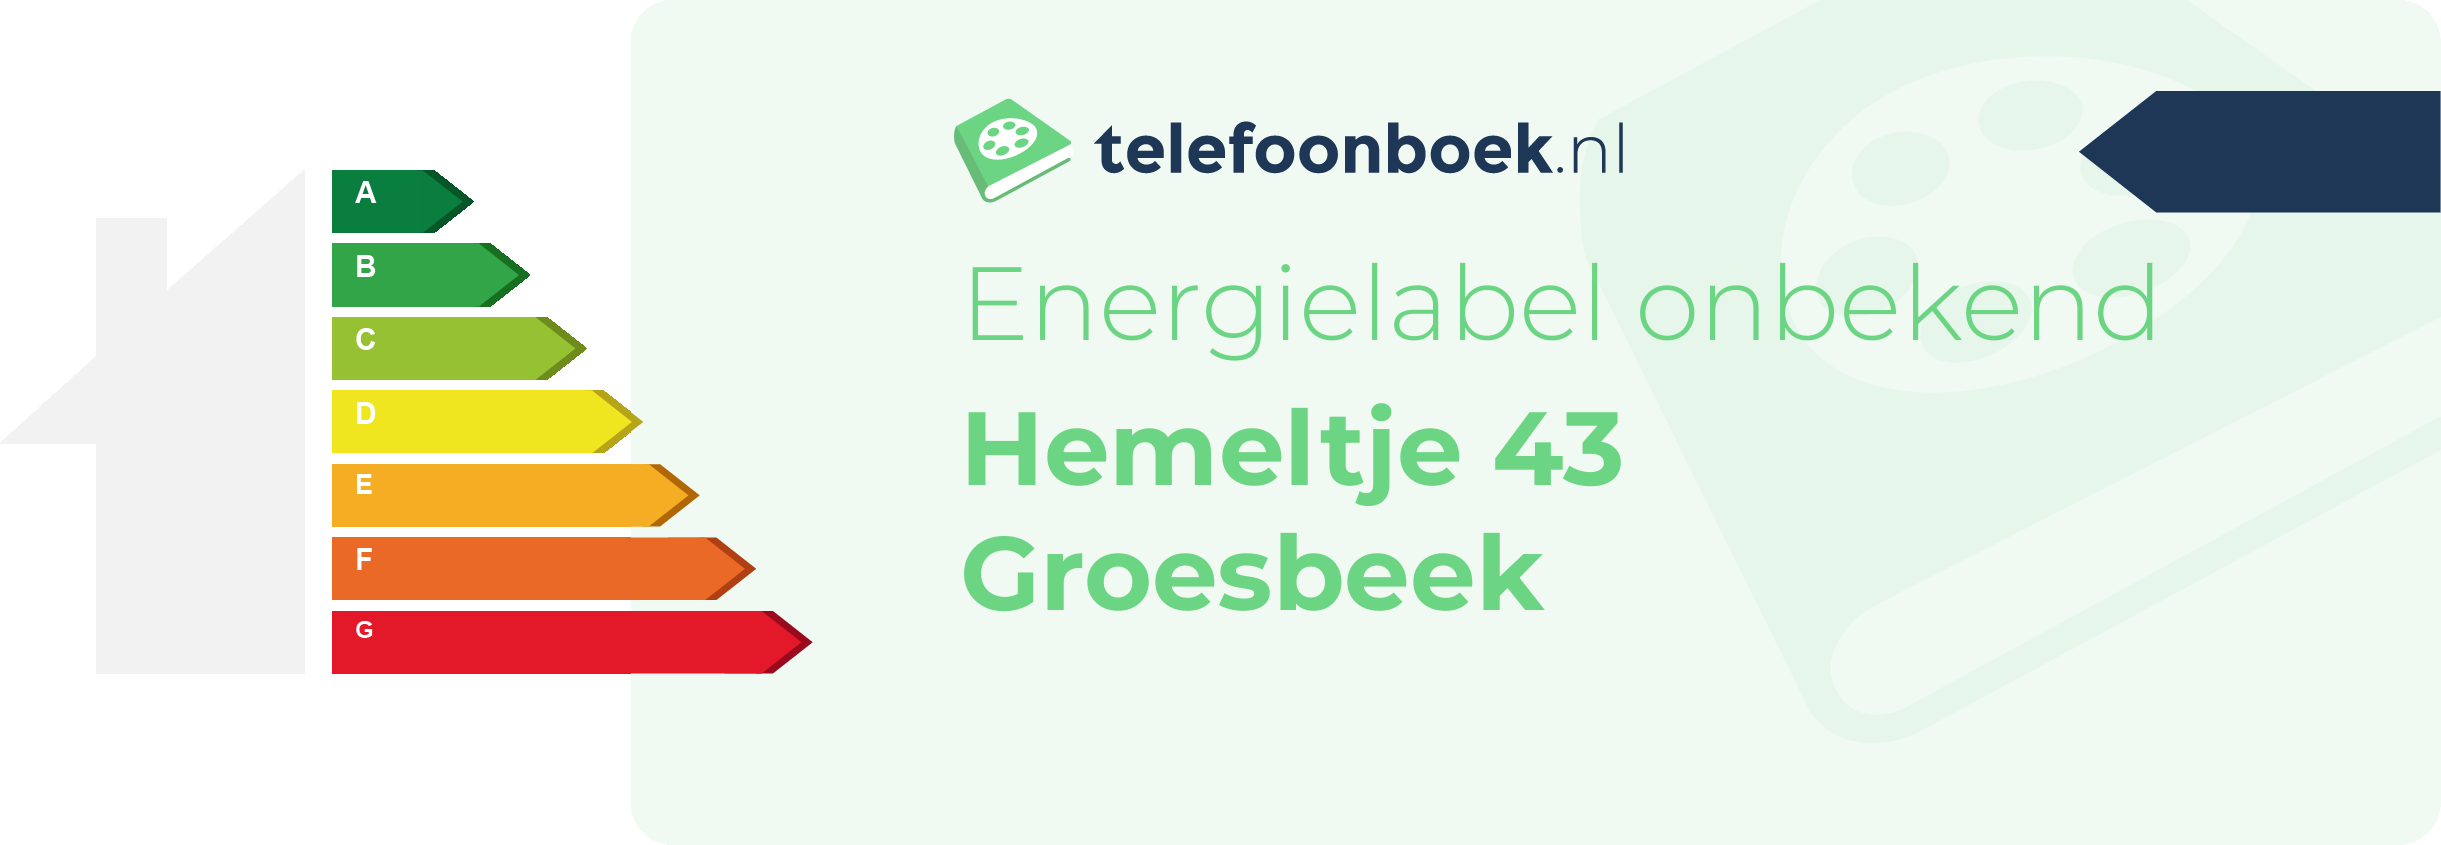 Energielabel Hemeltje 43 Groesbeek